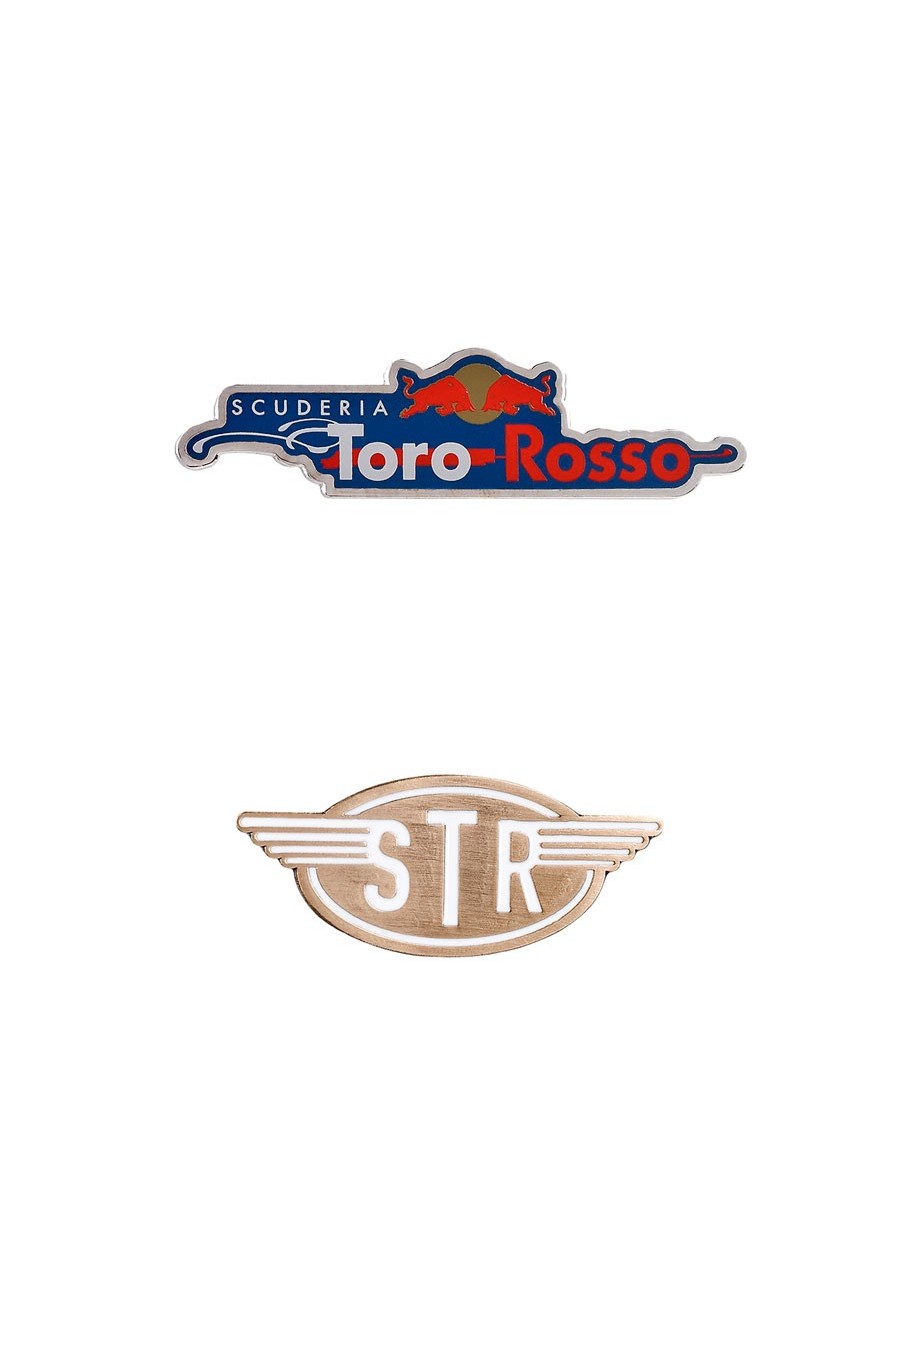 Scuderia Toro Rosso-Anstecknadeln